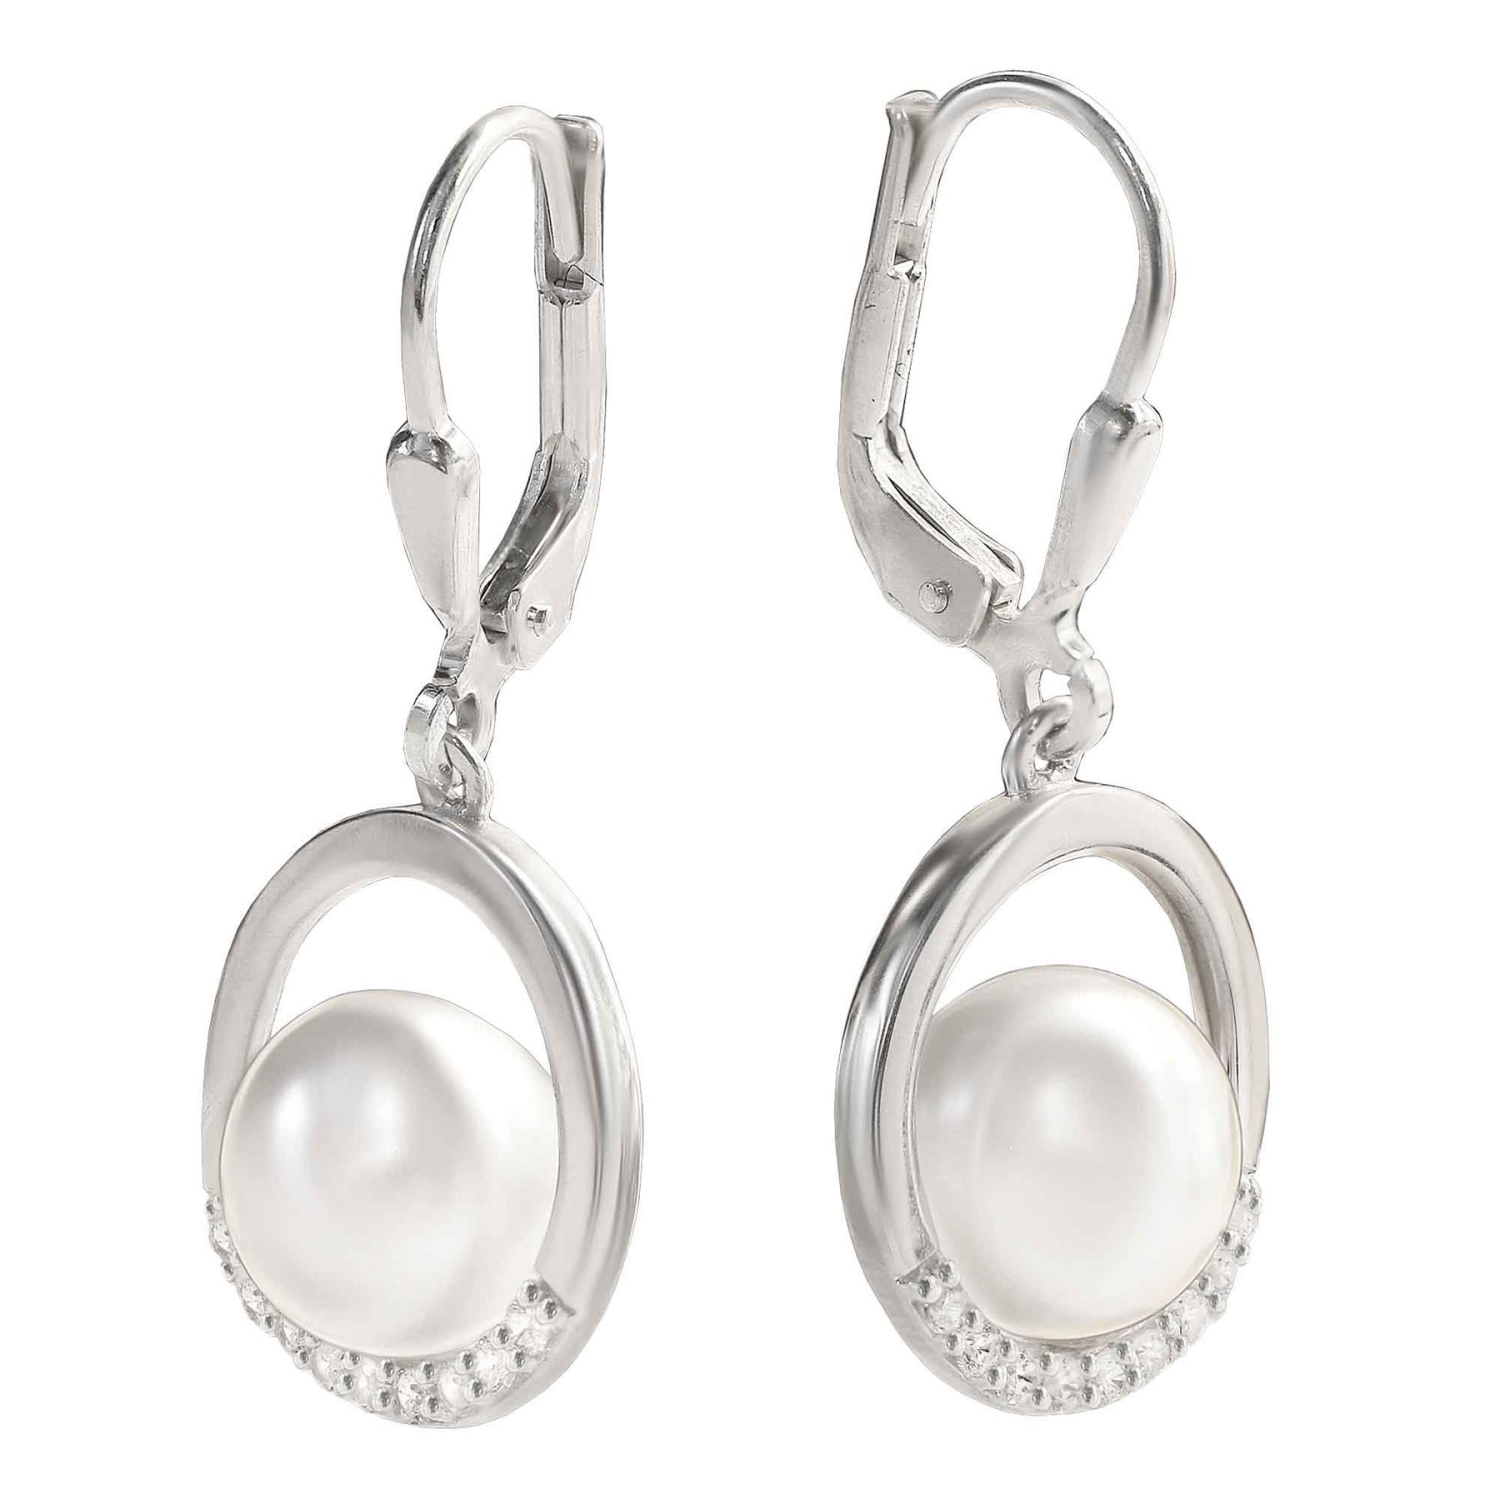 Silberne Perlenohrringe 28 mm mit weißer Perle Ø 9 mm elegant auf einen Silberring STERLING SILBER 925